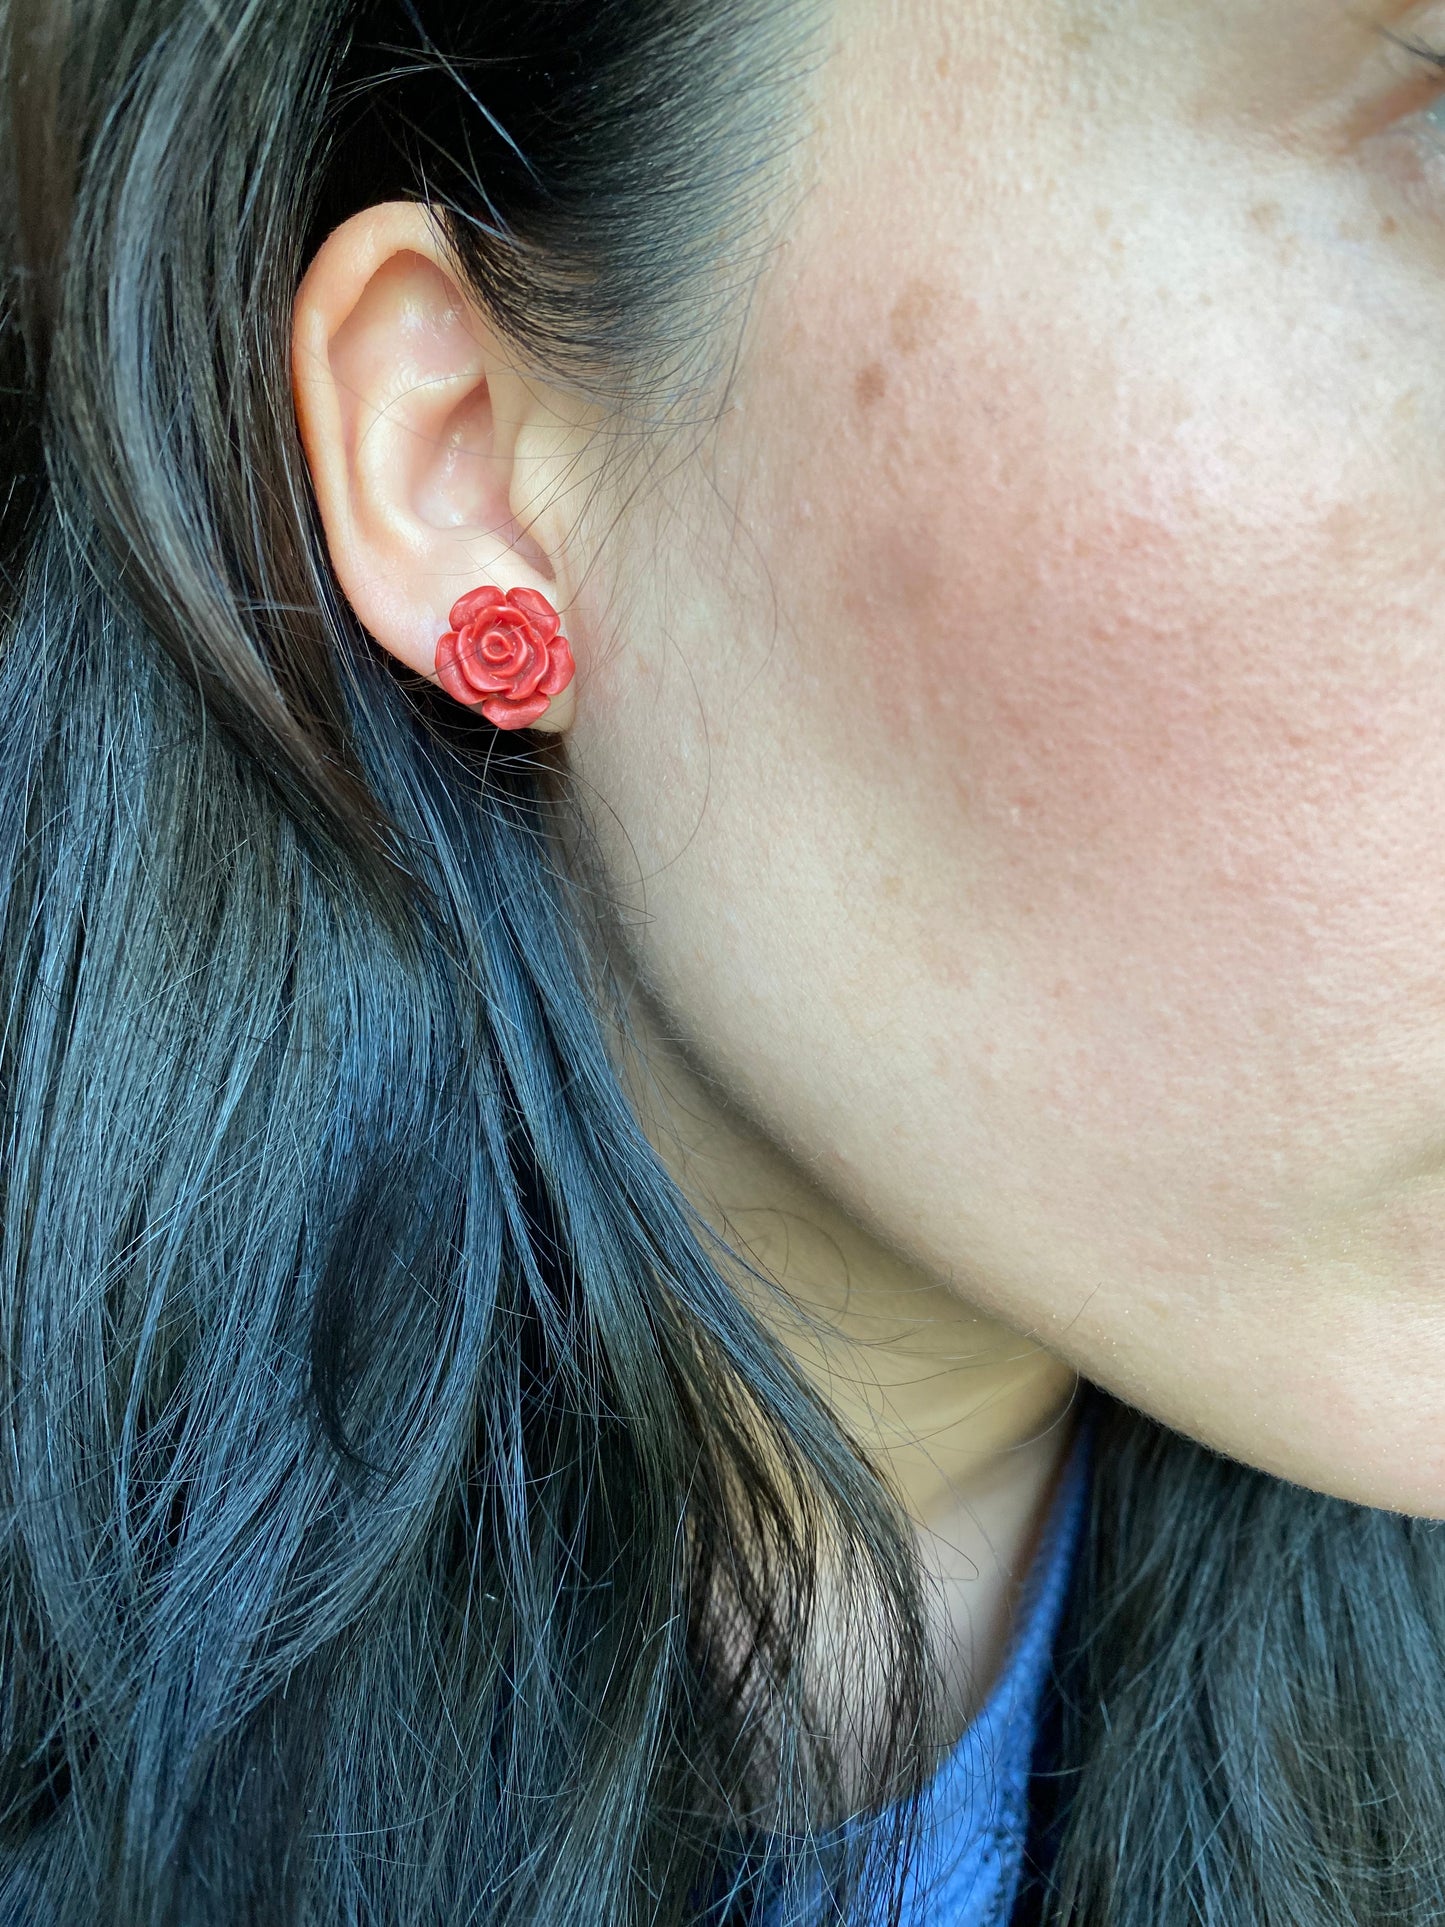 Red Rose Stud Earrings